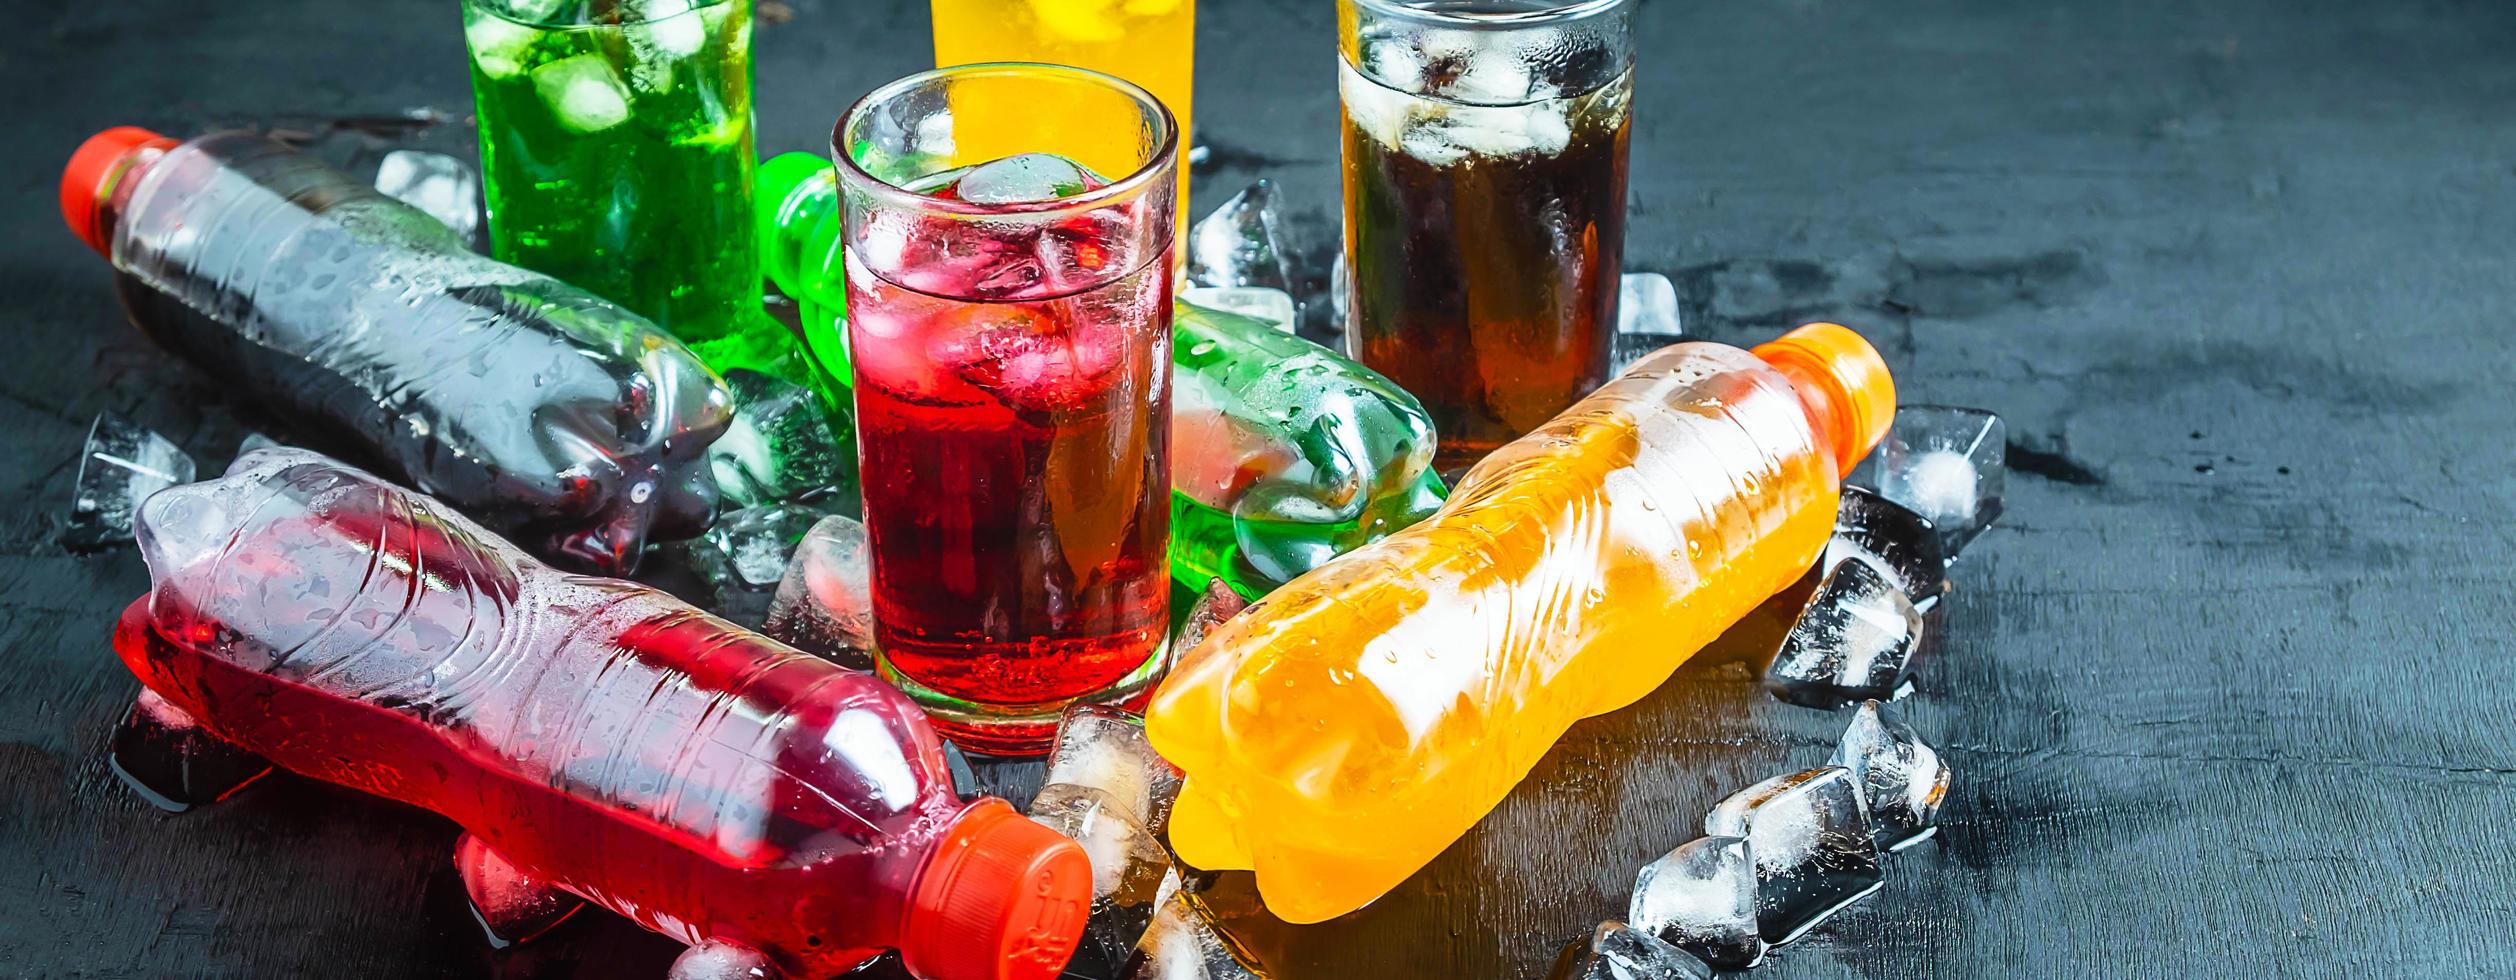 vista superior muitas garrafas refrigerantes coloridas e saborosas em cima da mesa, copos com bebidas doces com cubos de gelo foto